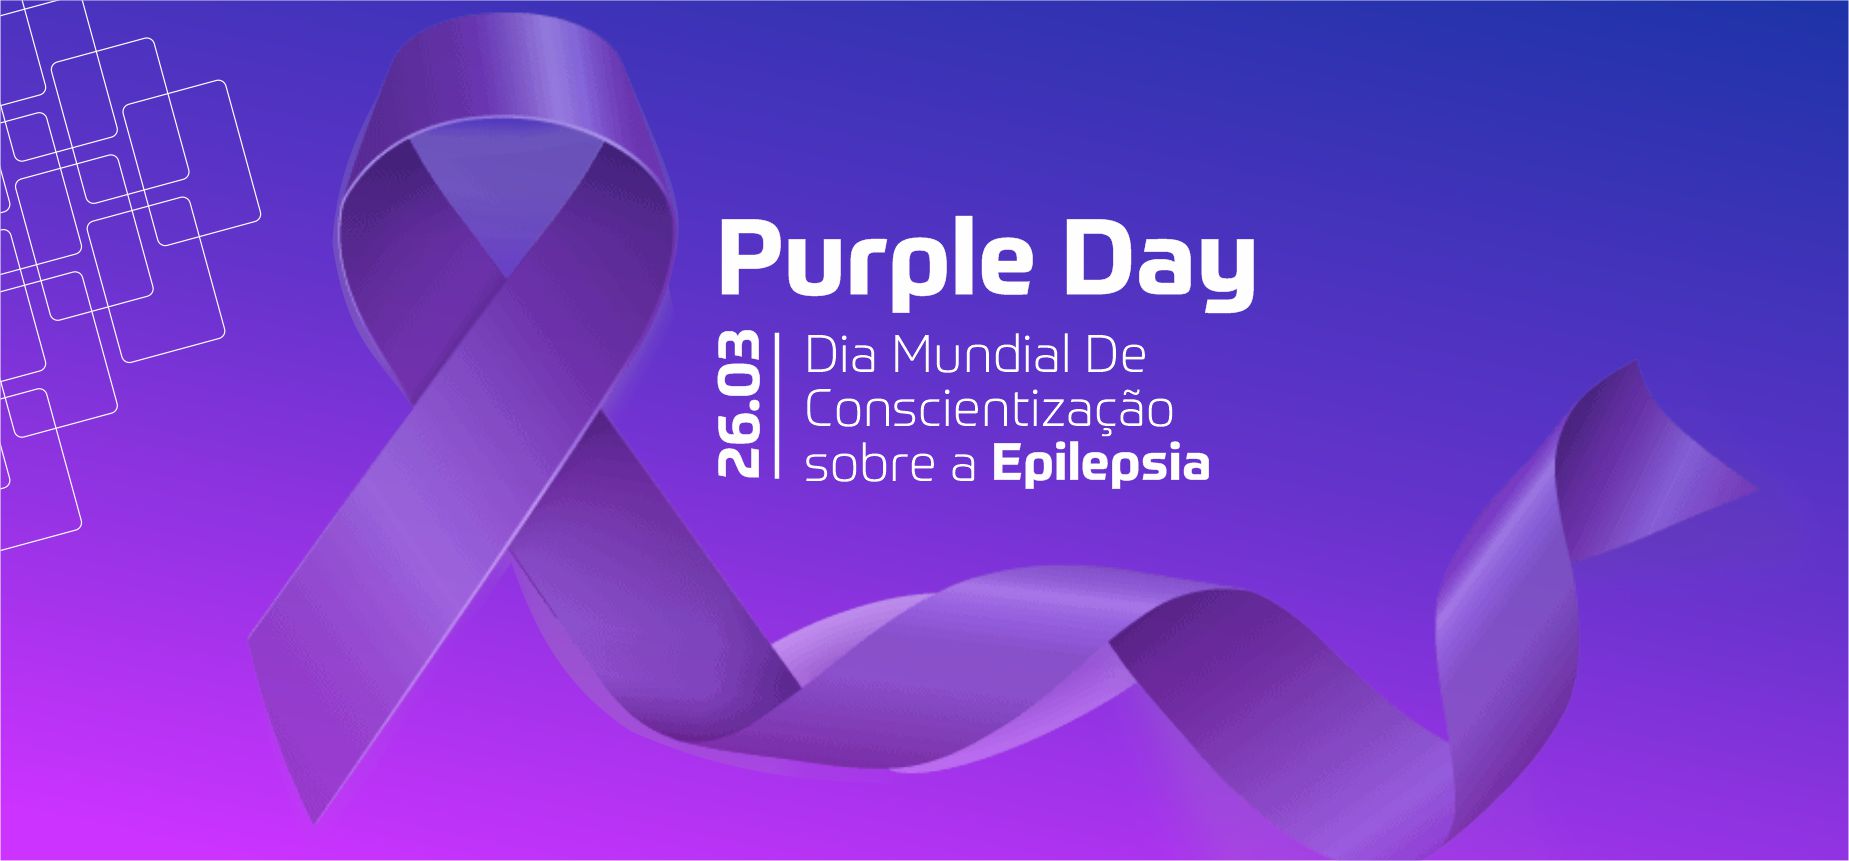 Campanha mundial Purple Day tem dia de conscientização sobre